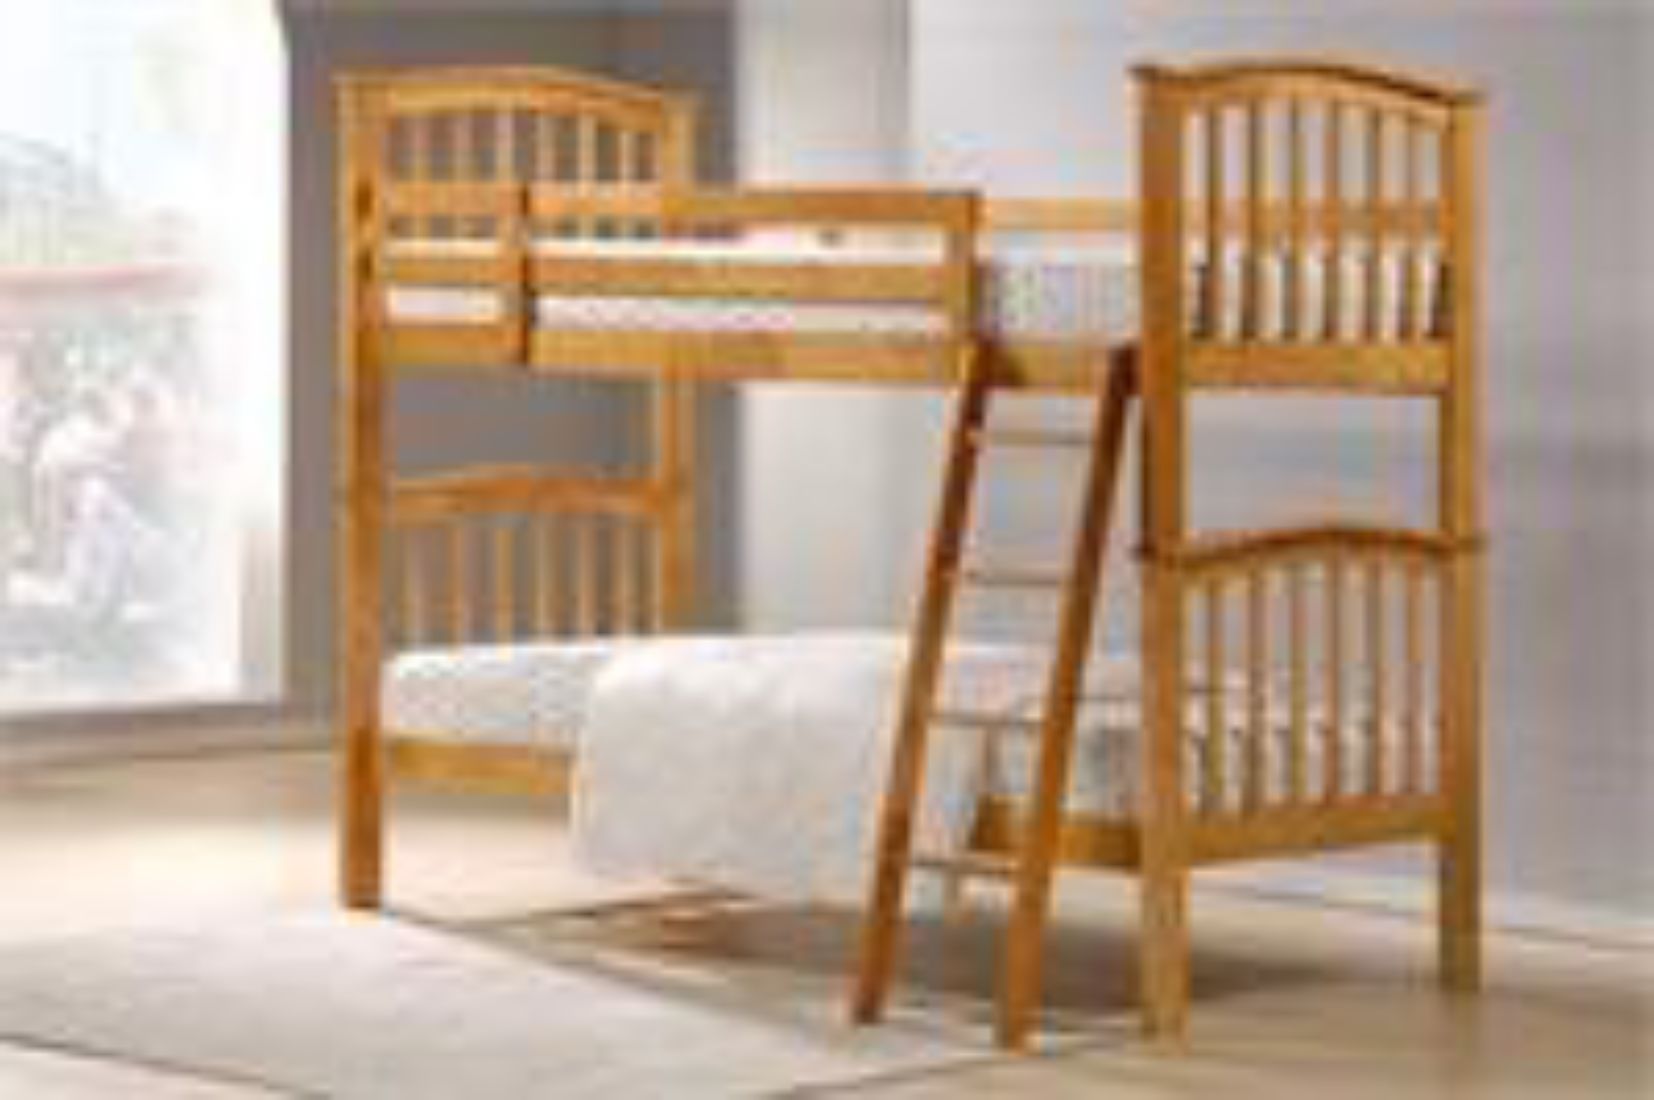 Mattress to fit Pisa bunk beds - mattress size 190 x 90 cm